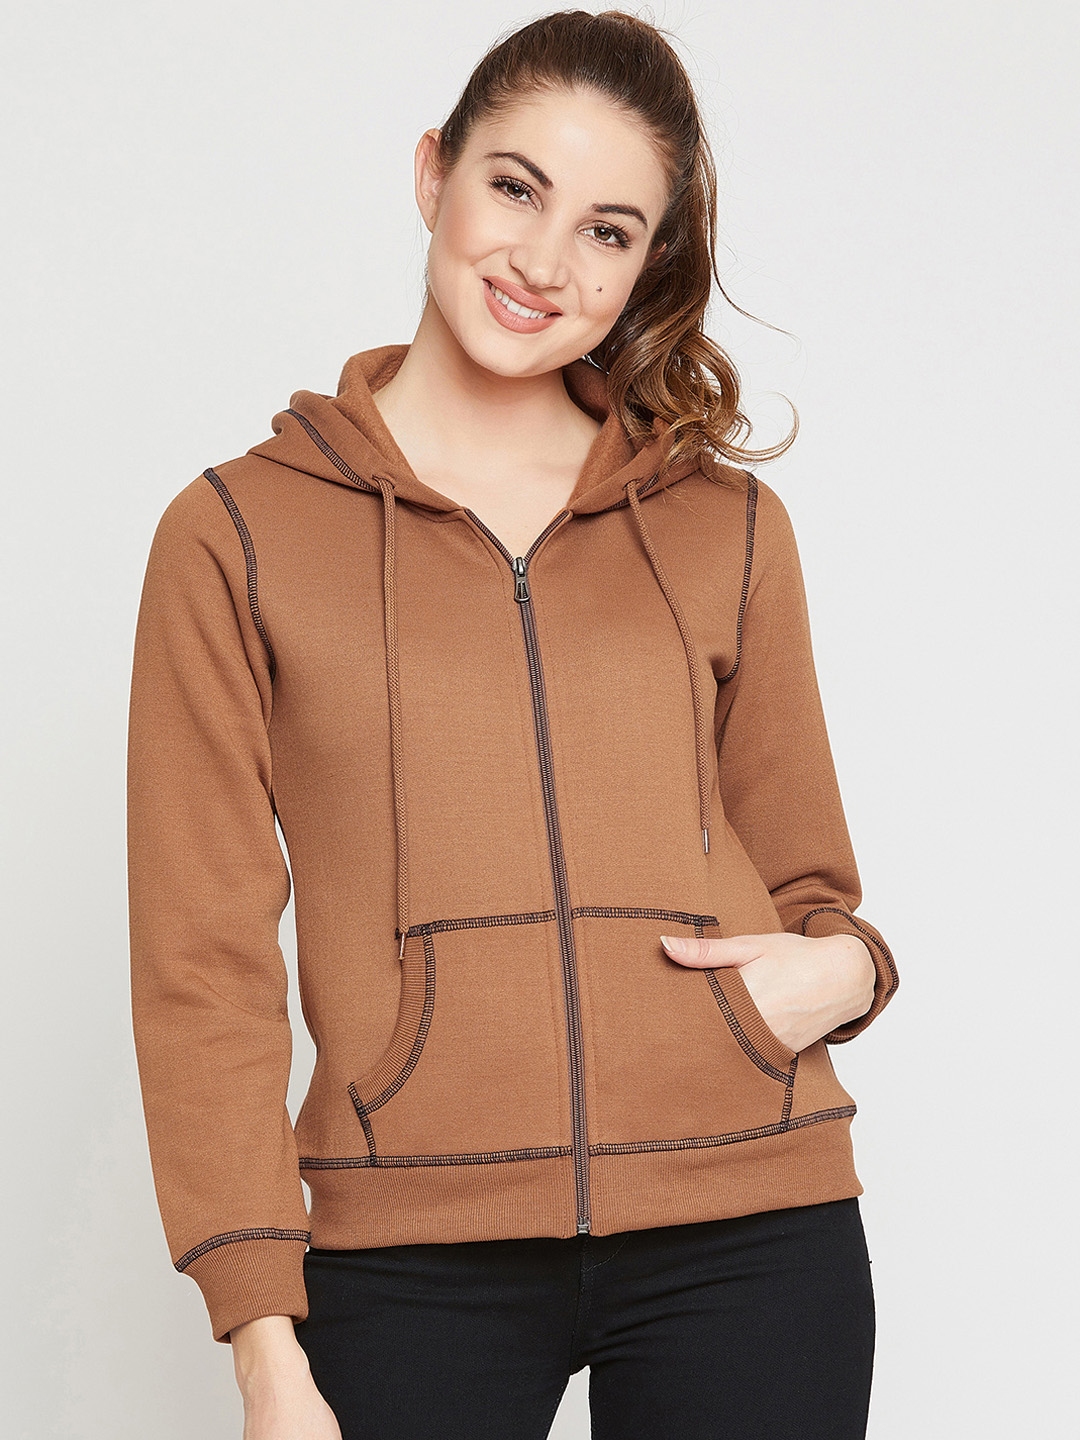 brown sweatshirt for women